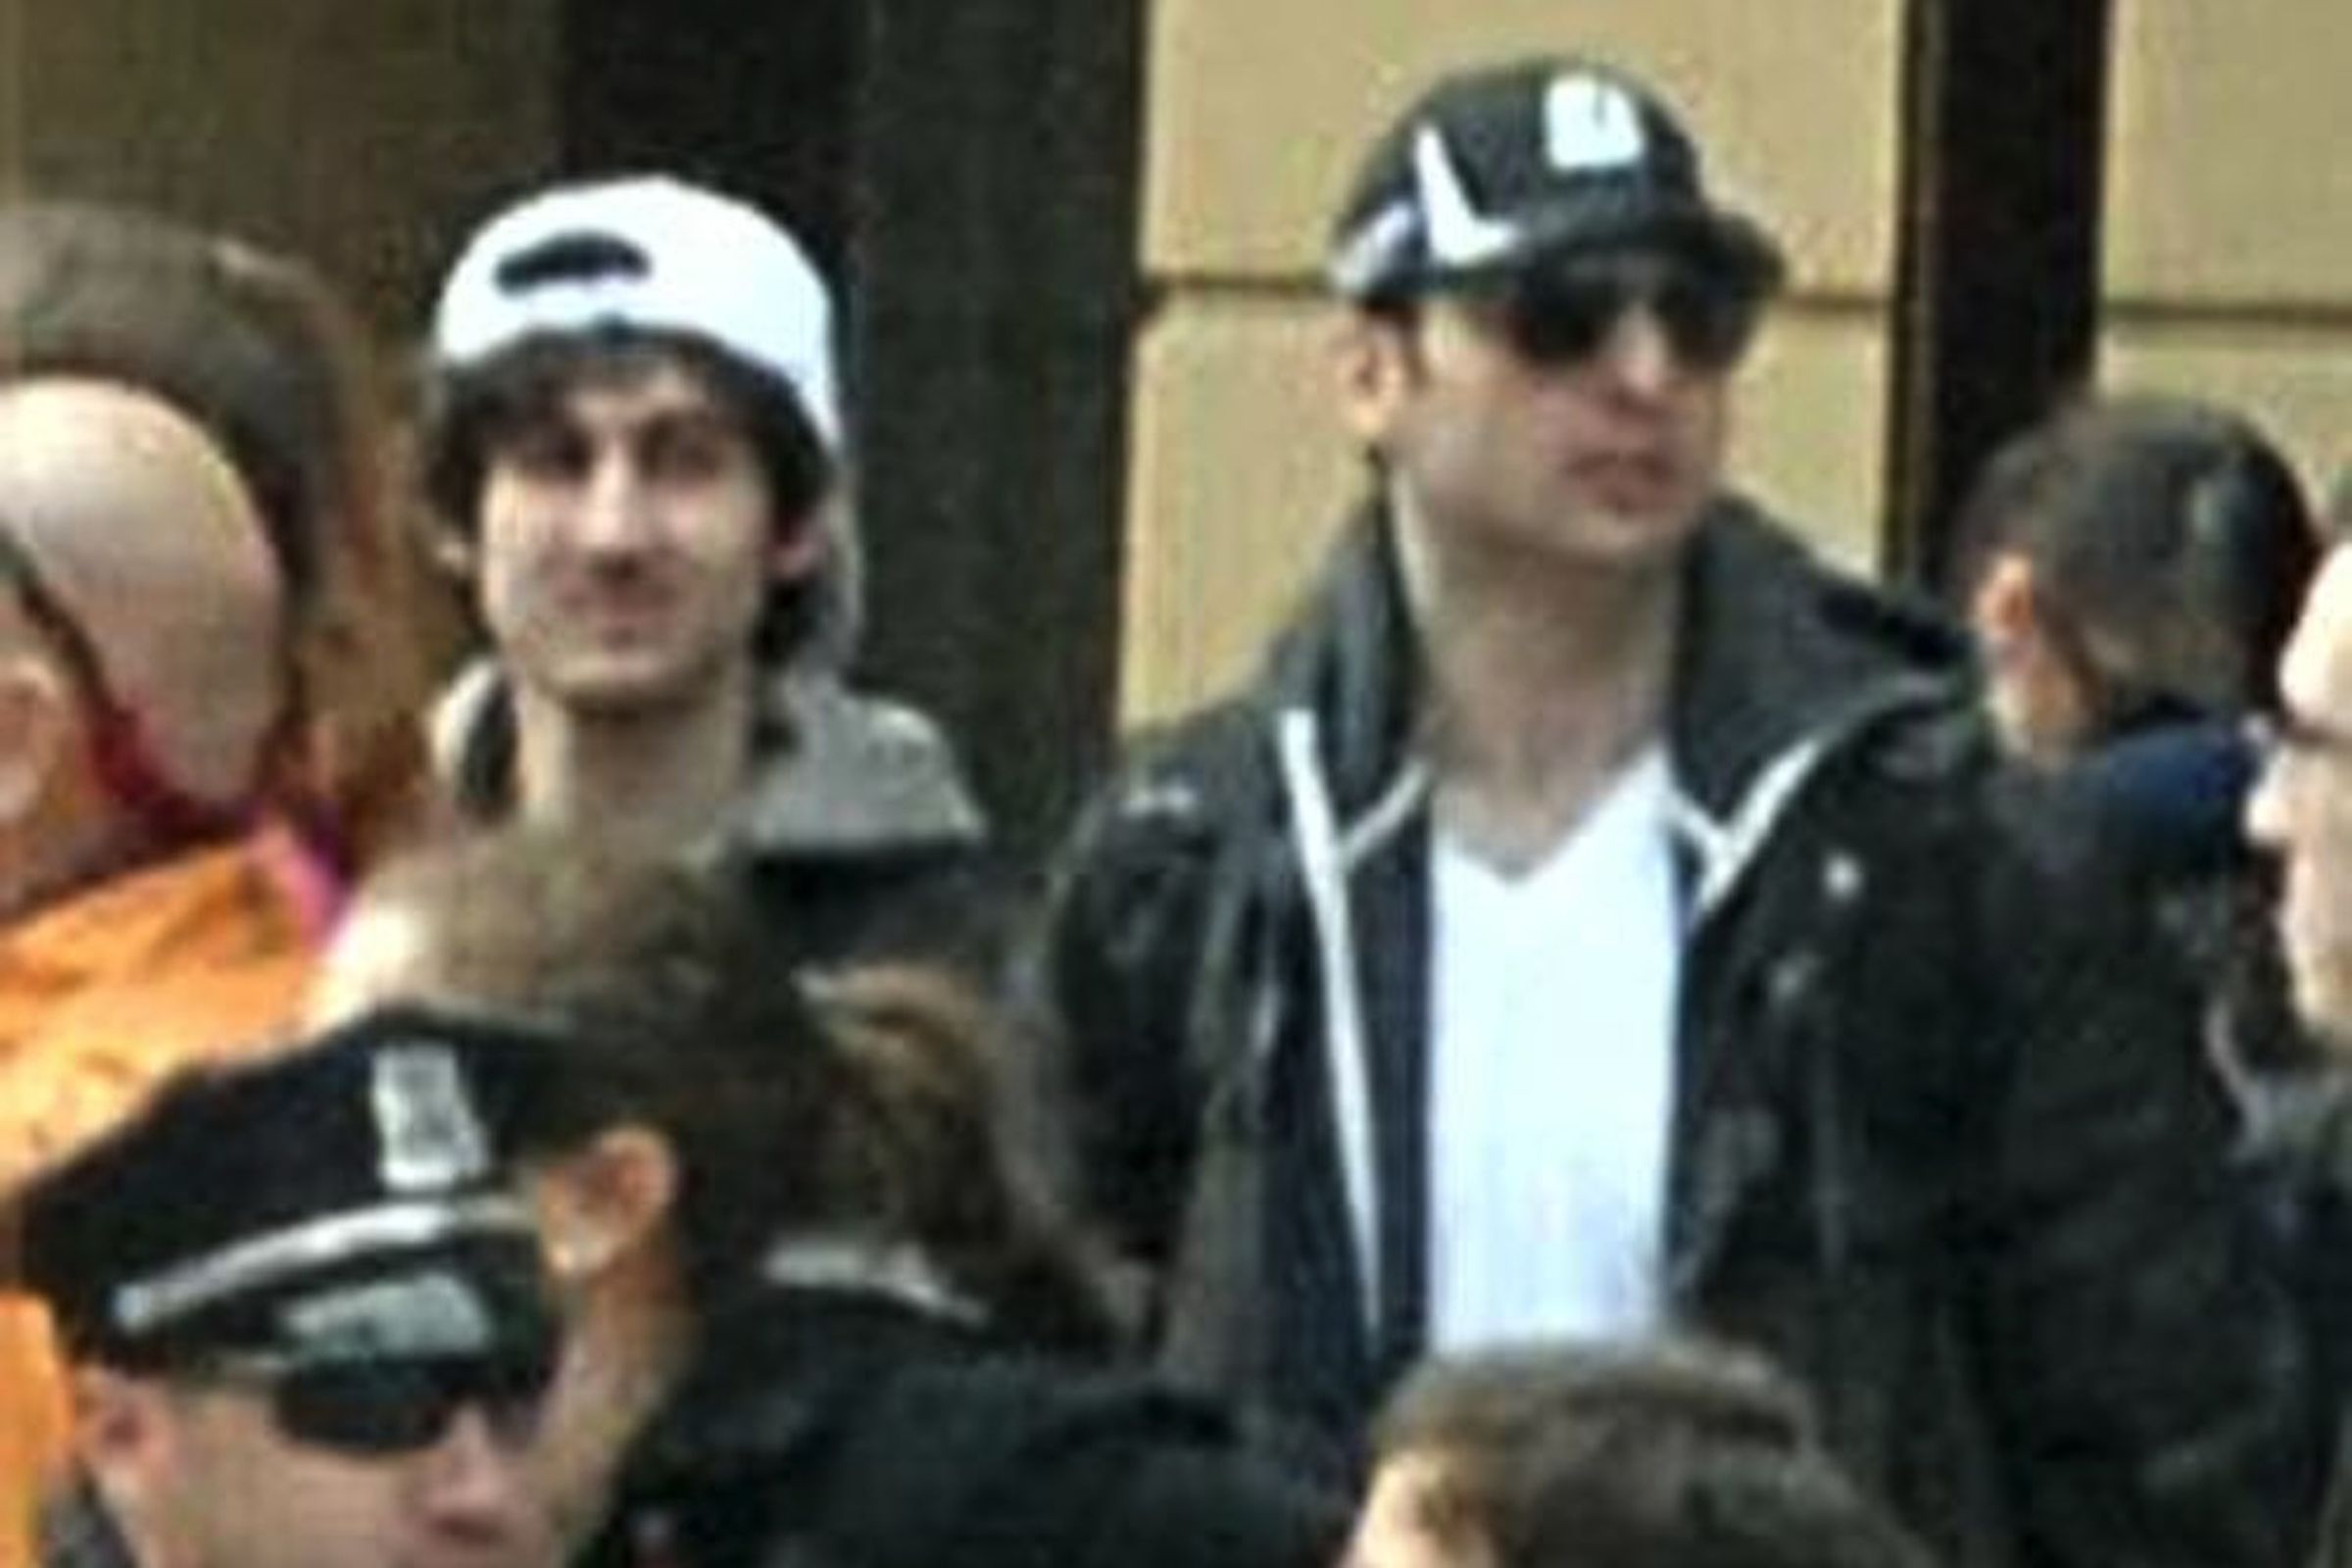 The Boston Marathon bombers Dzhokhar Tsarnaev, left, and his older brother Tamerlan.